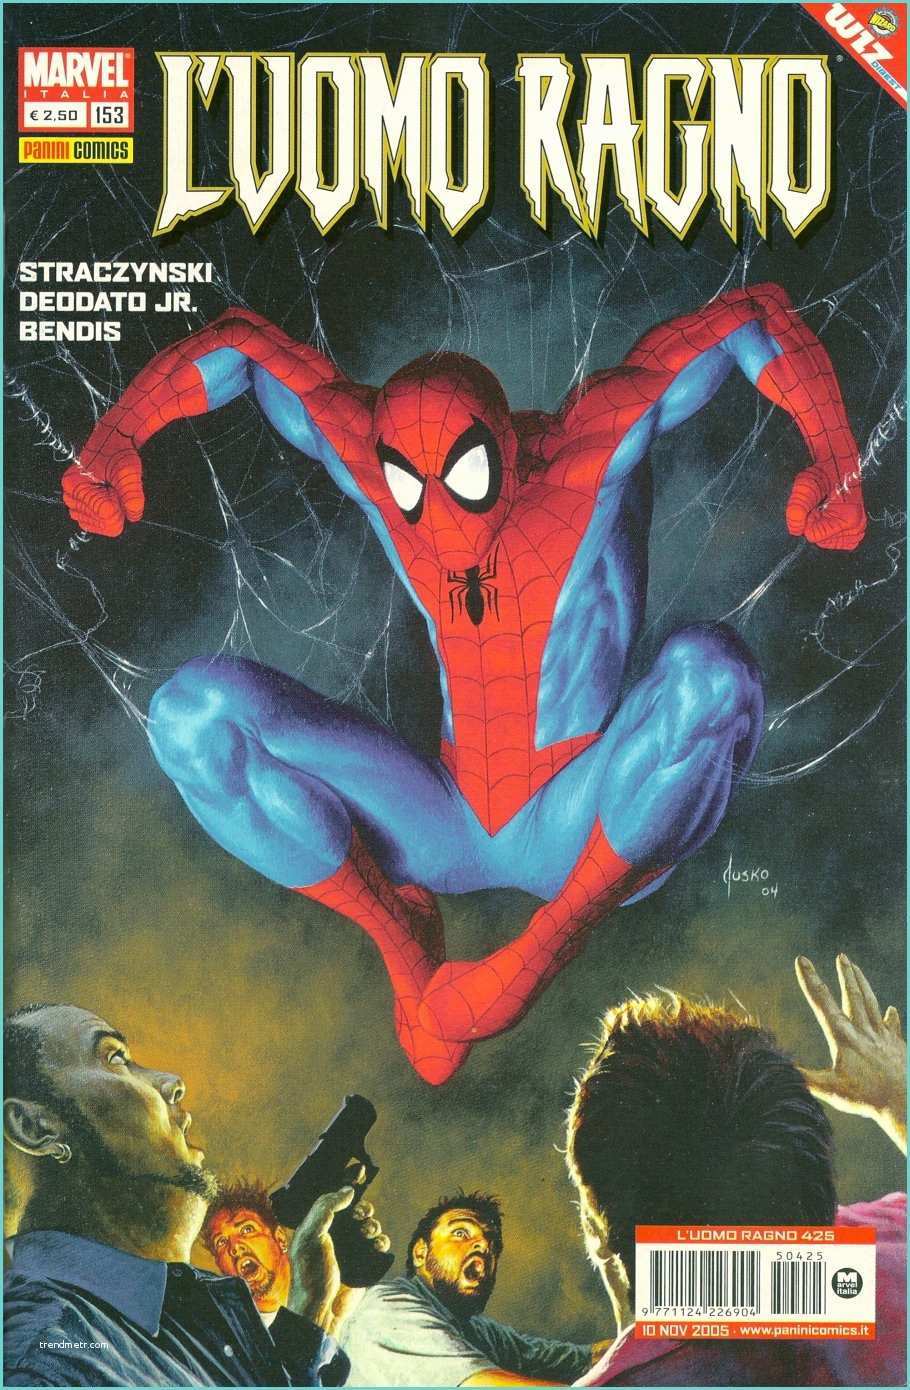 Immagini Di Spiderman Da Disegnare Uomo Ragno